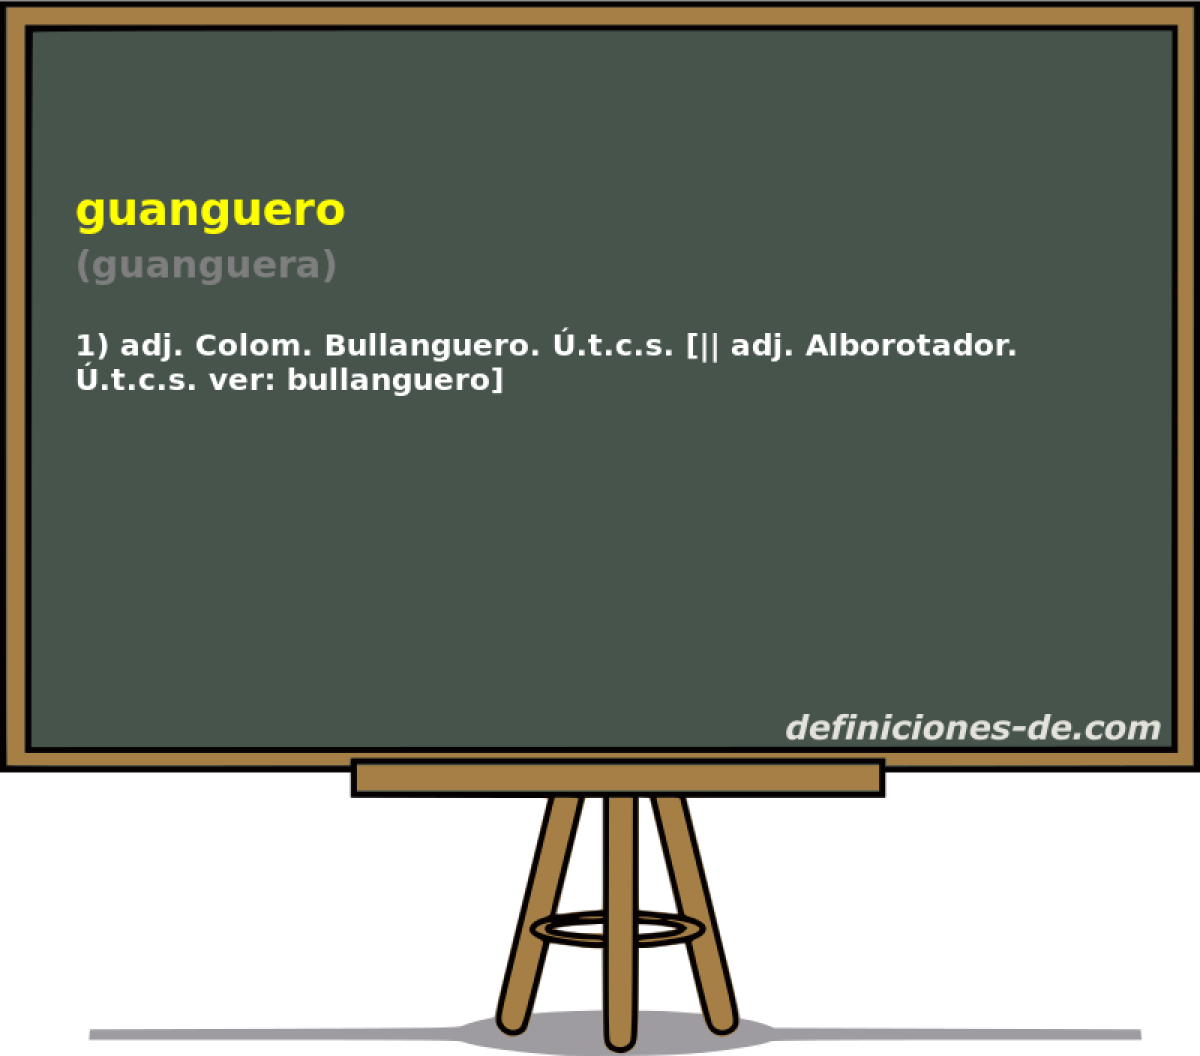 guanguero (guanguera)